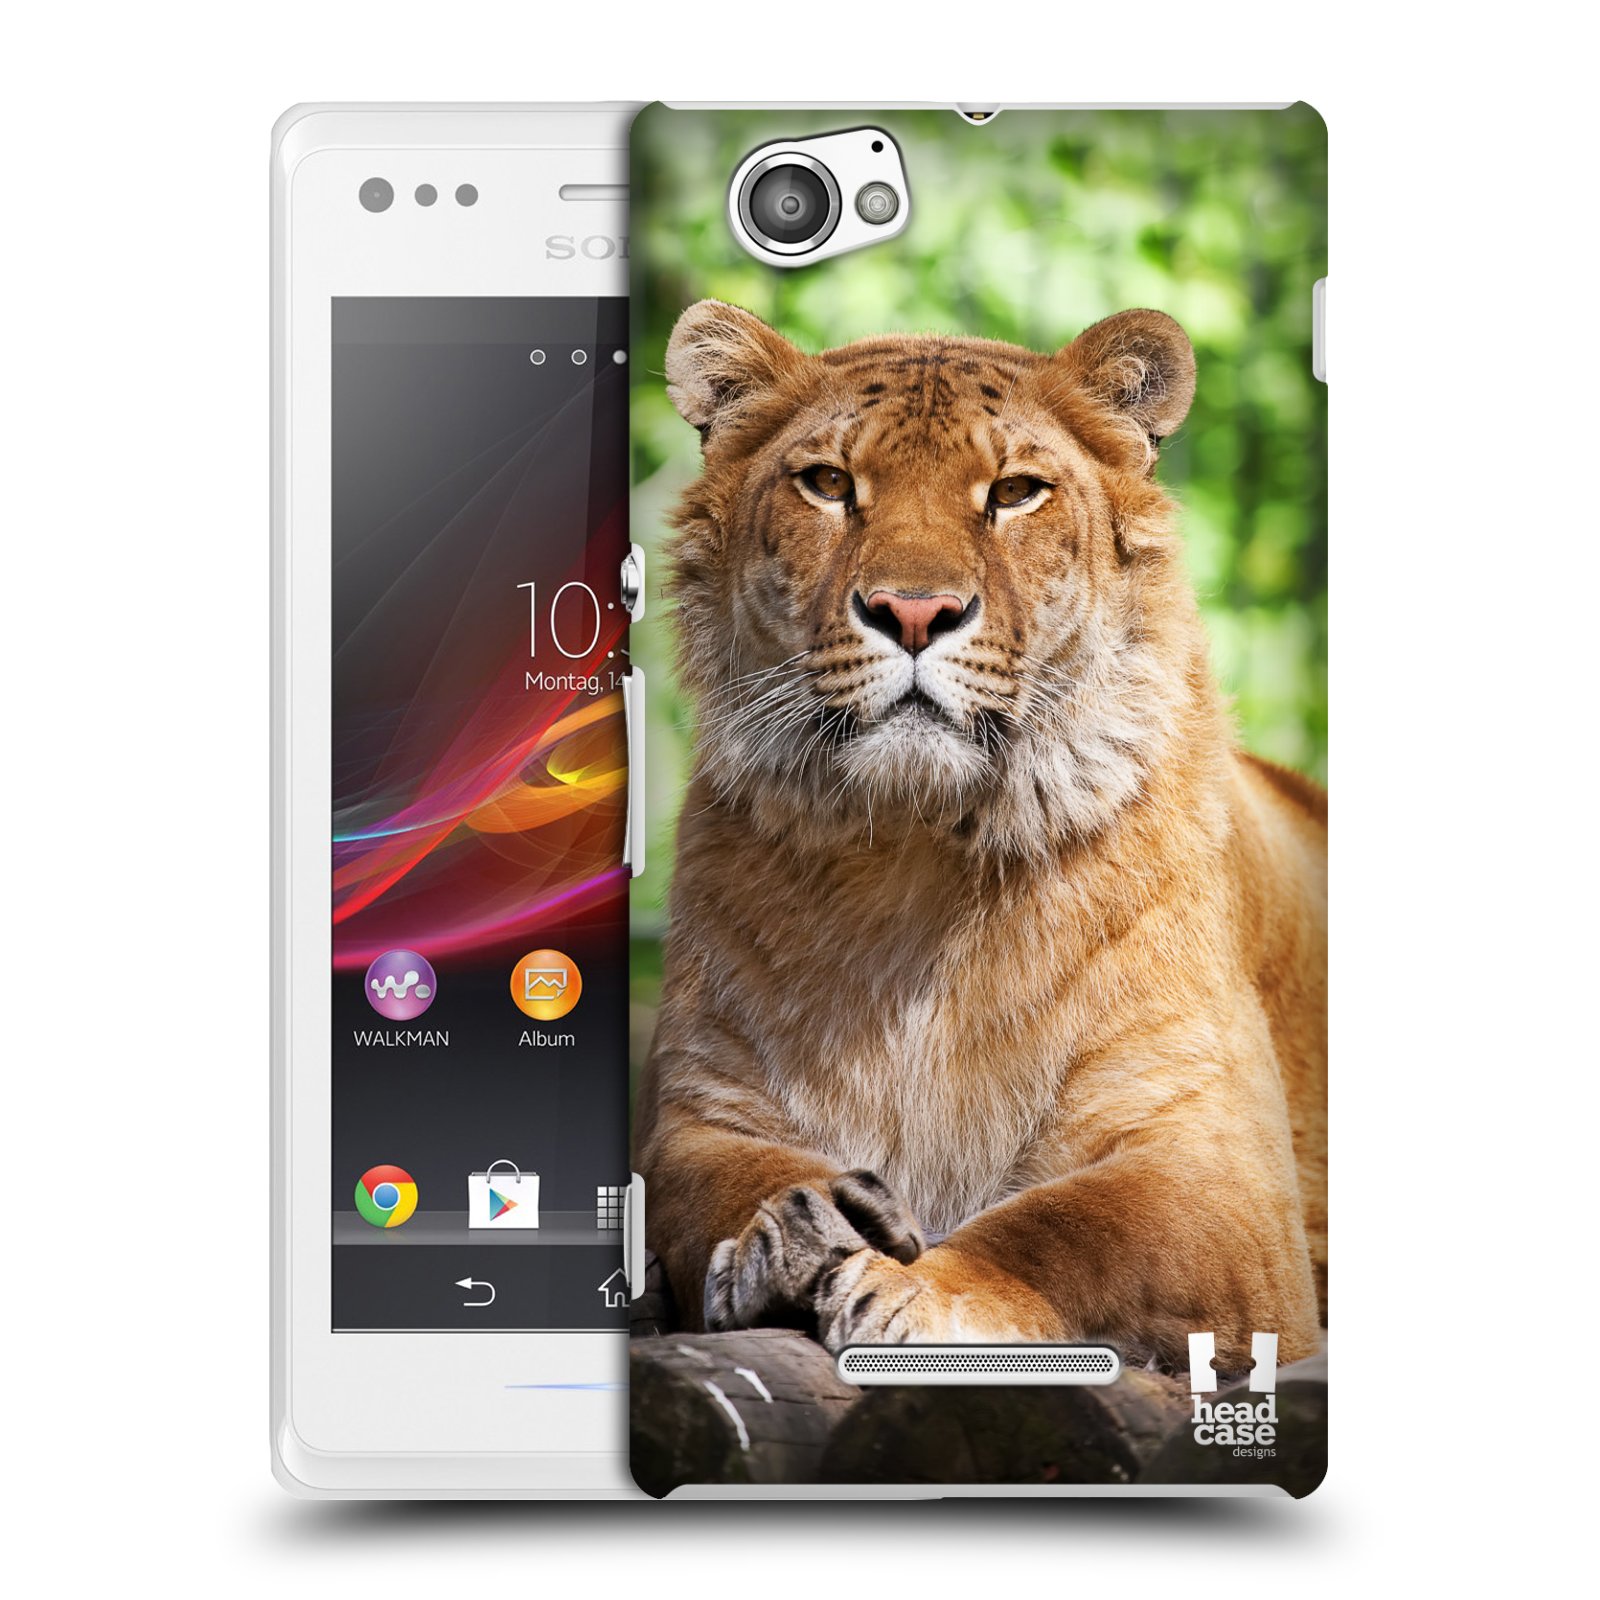 HEAD CASE plastový obal na mobil Sony Xperia M vzor slavná zvířata foto tygr